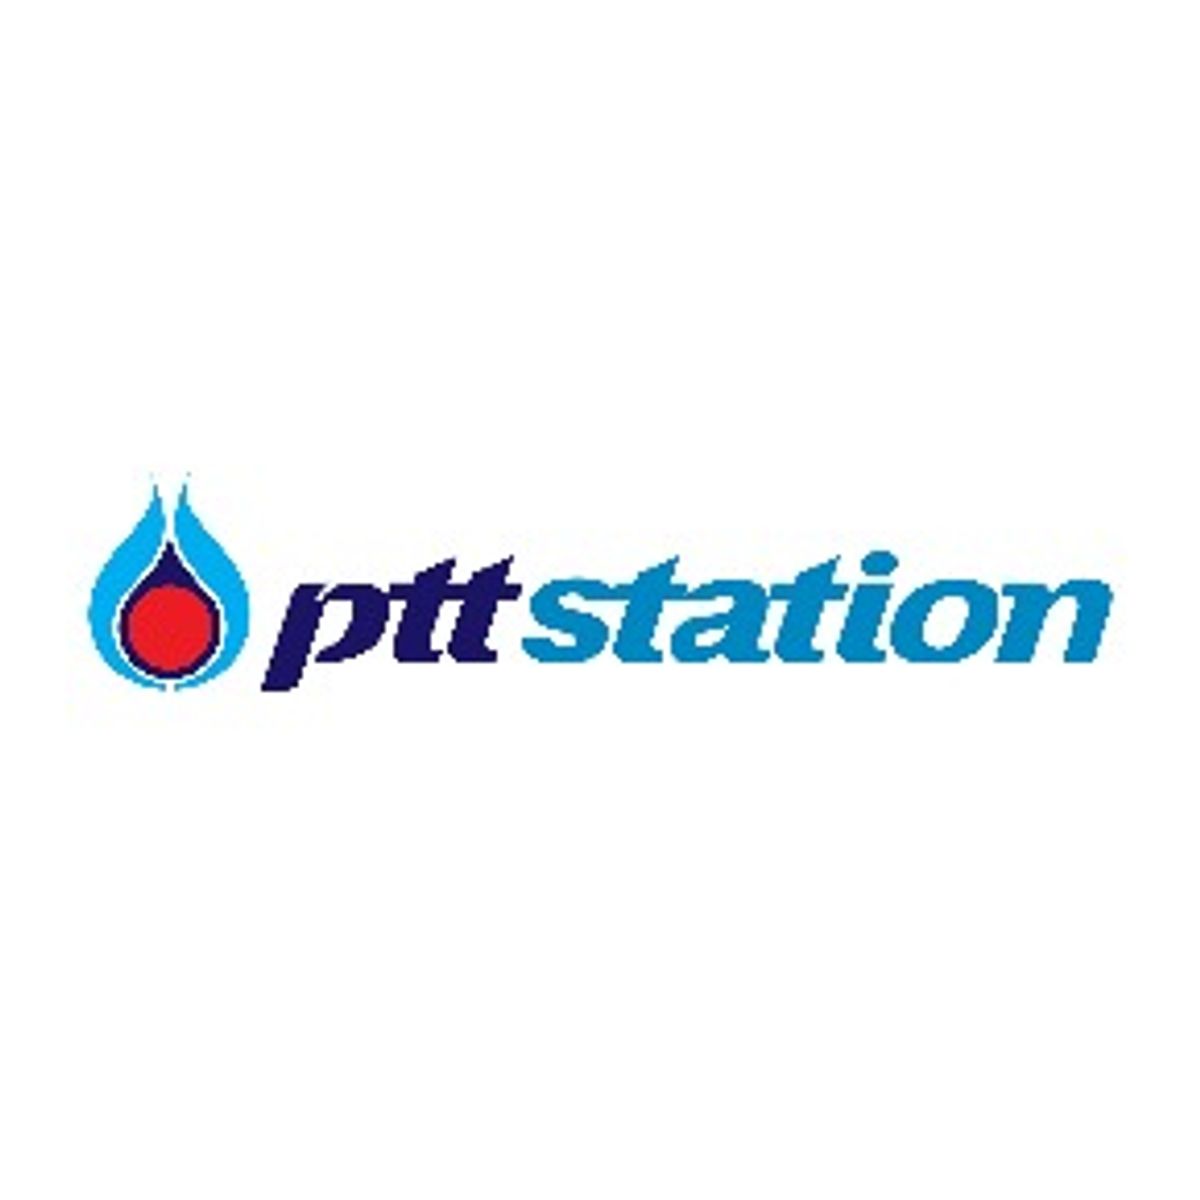 โปรโมชั่น ส่วนลด Ptt Station ปั๊มน้ำมัน ปตท. อัพเดท กรกฎาคม 2023 - Sale Here